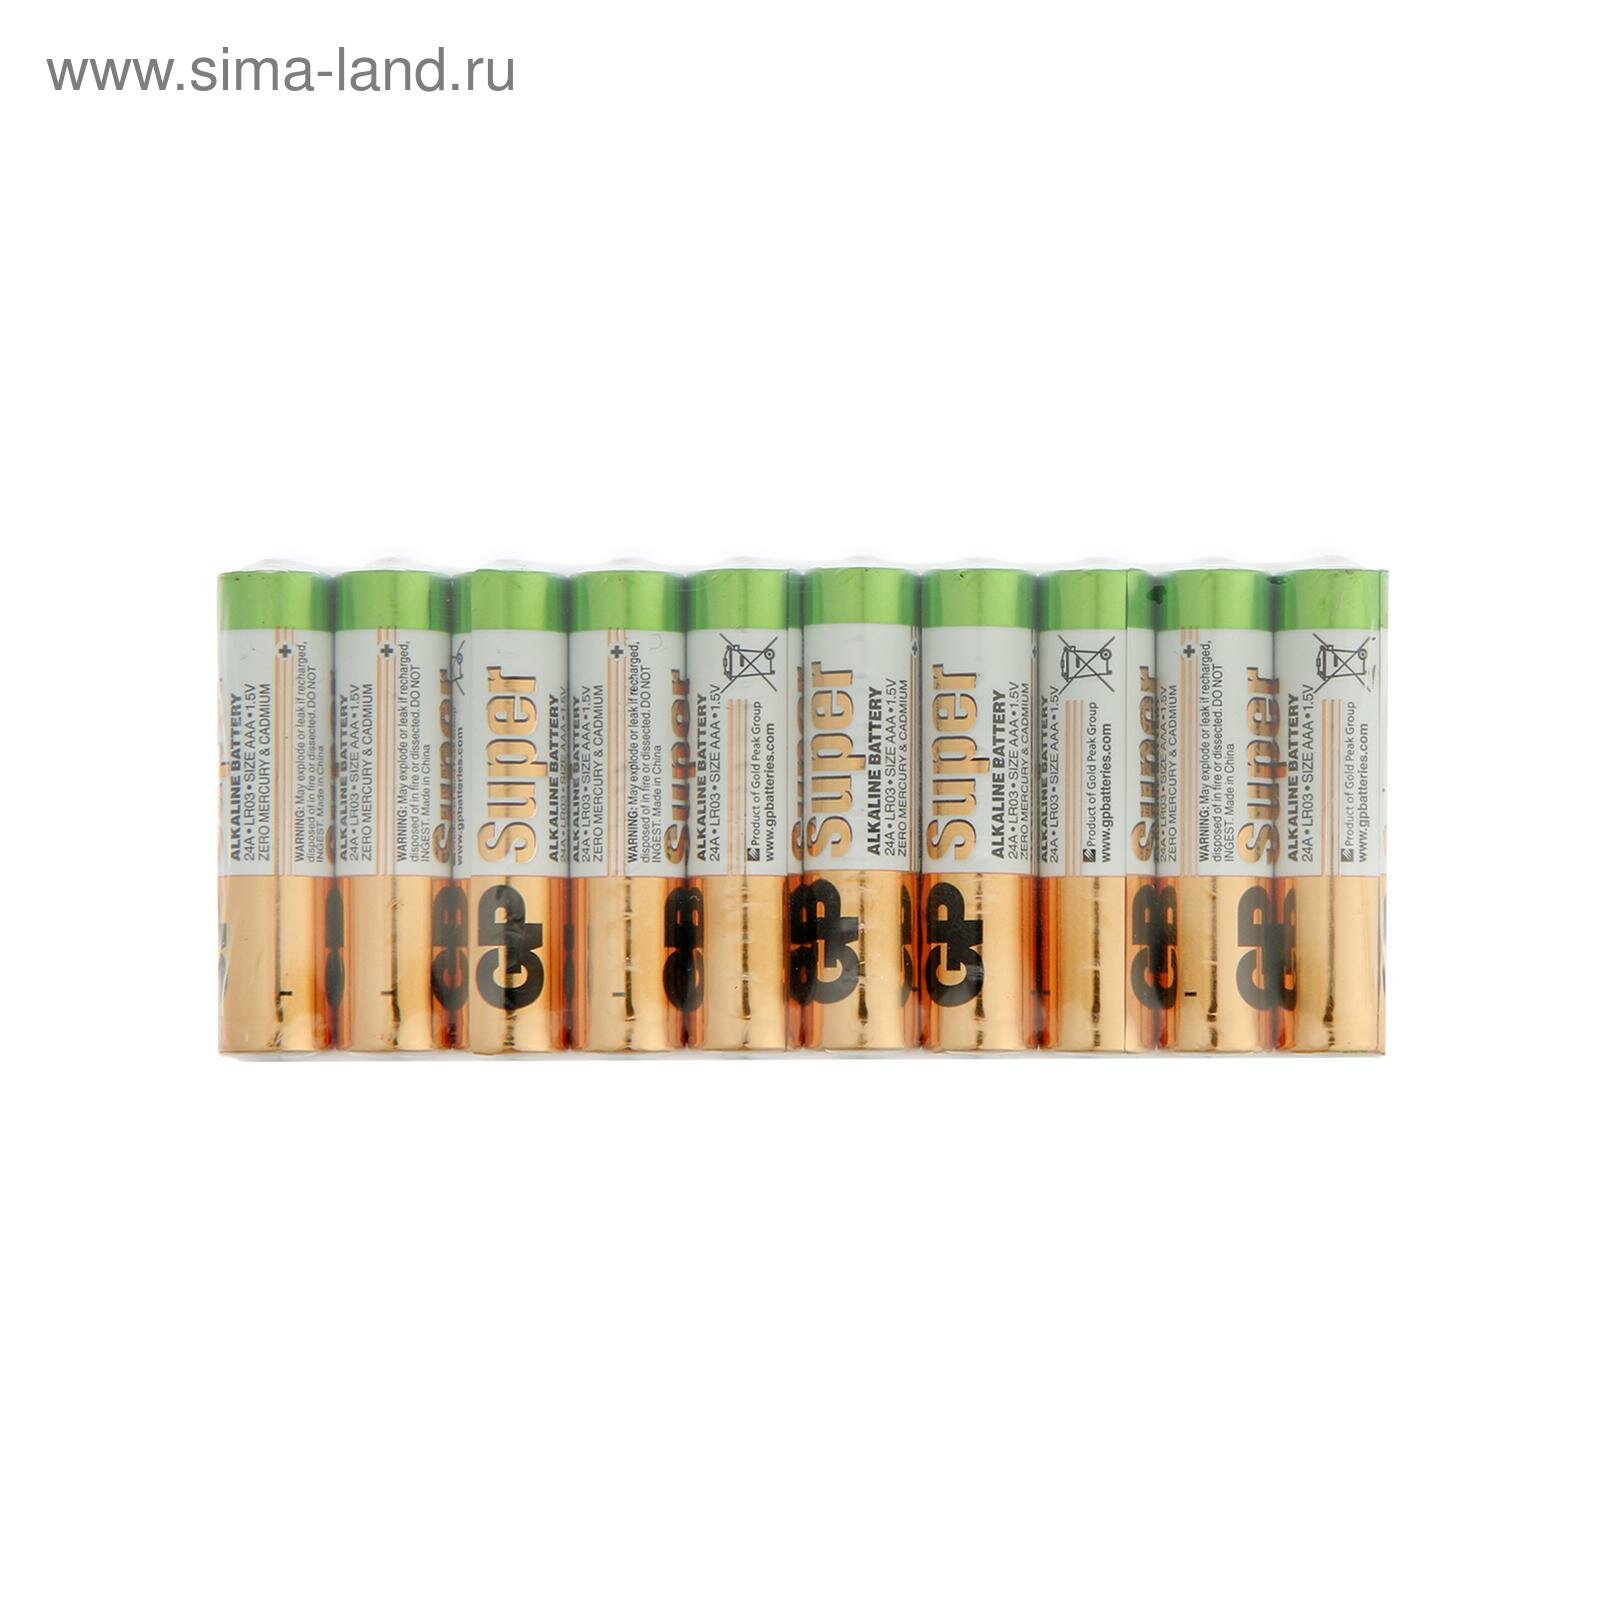 Батарейка алкалиновая Super, AAA, LR03-50BOX, 1.5В, набор 50 шт